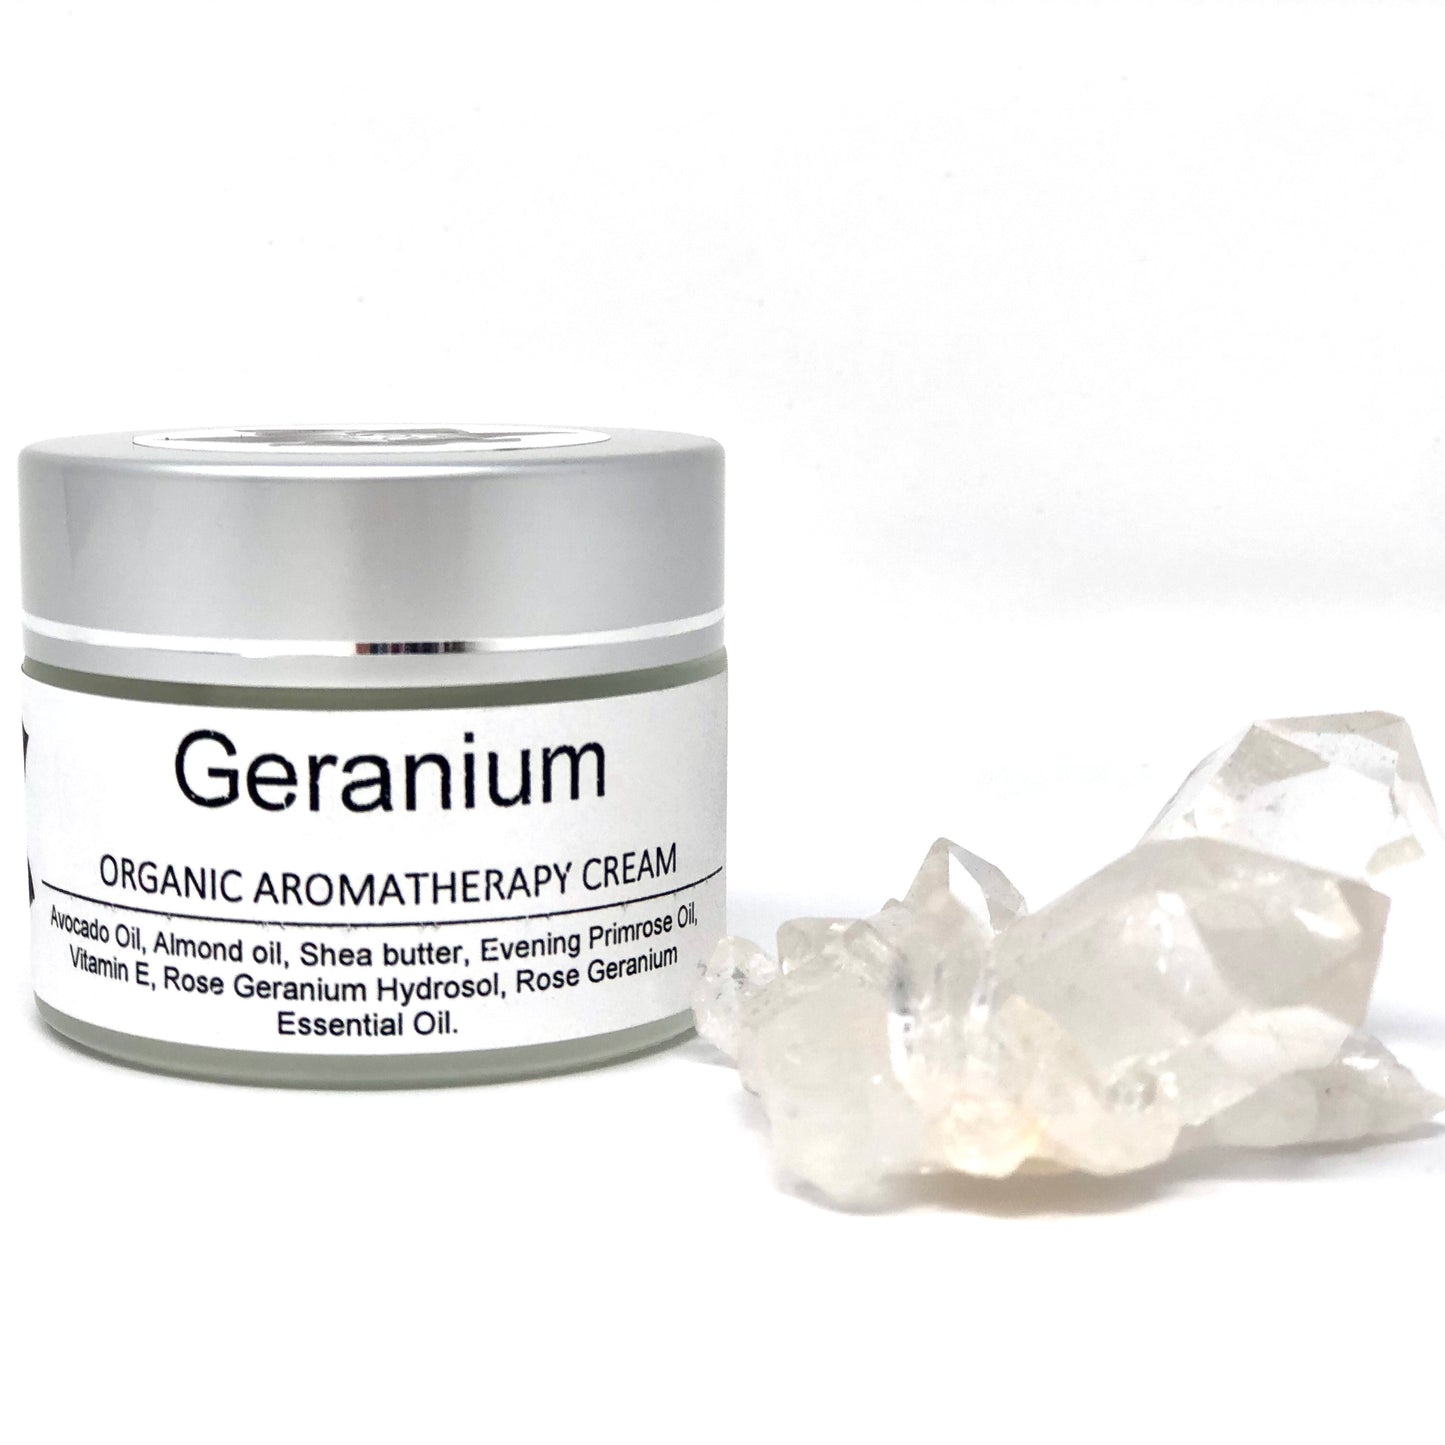 Geranium Aromatherapy Cream